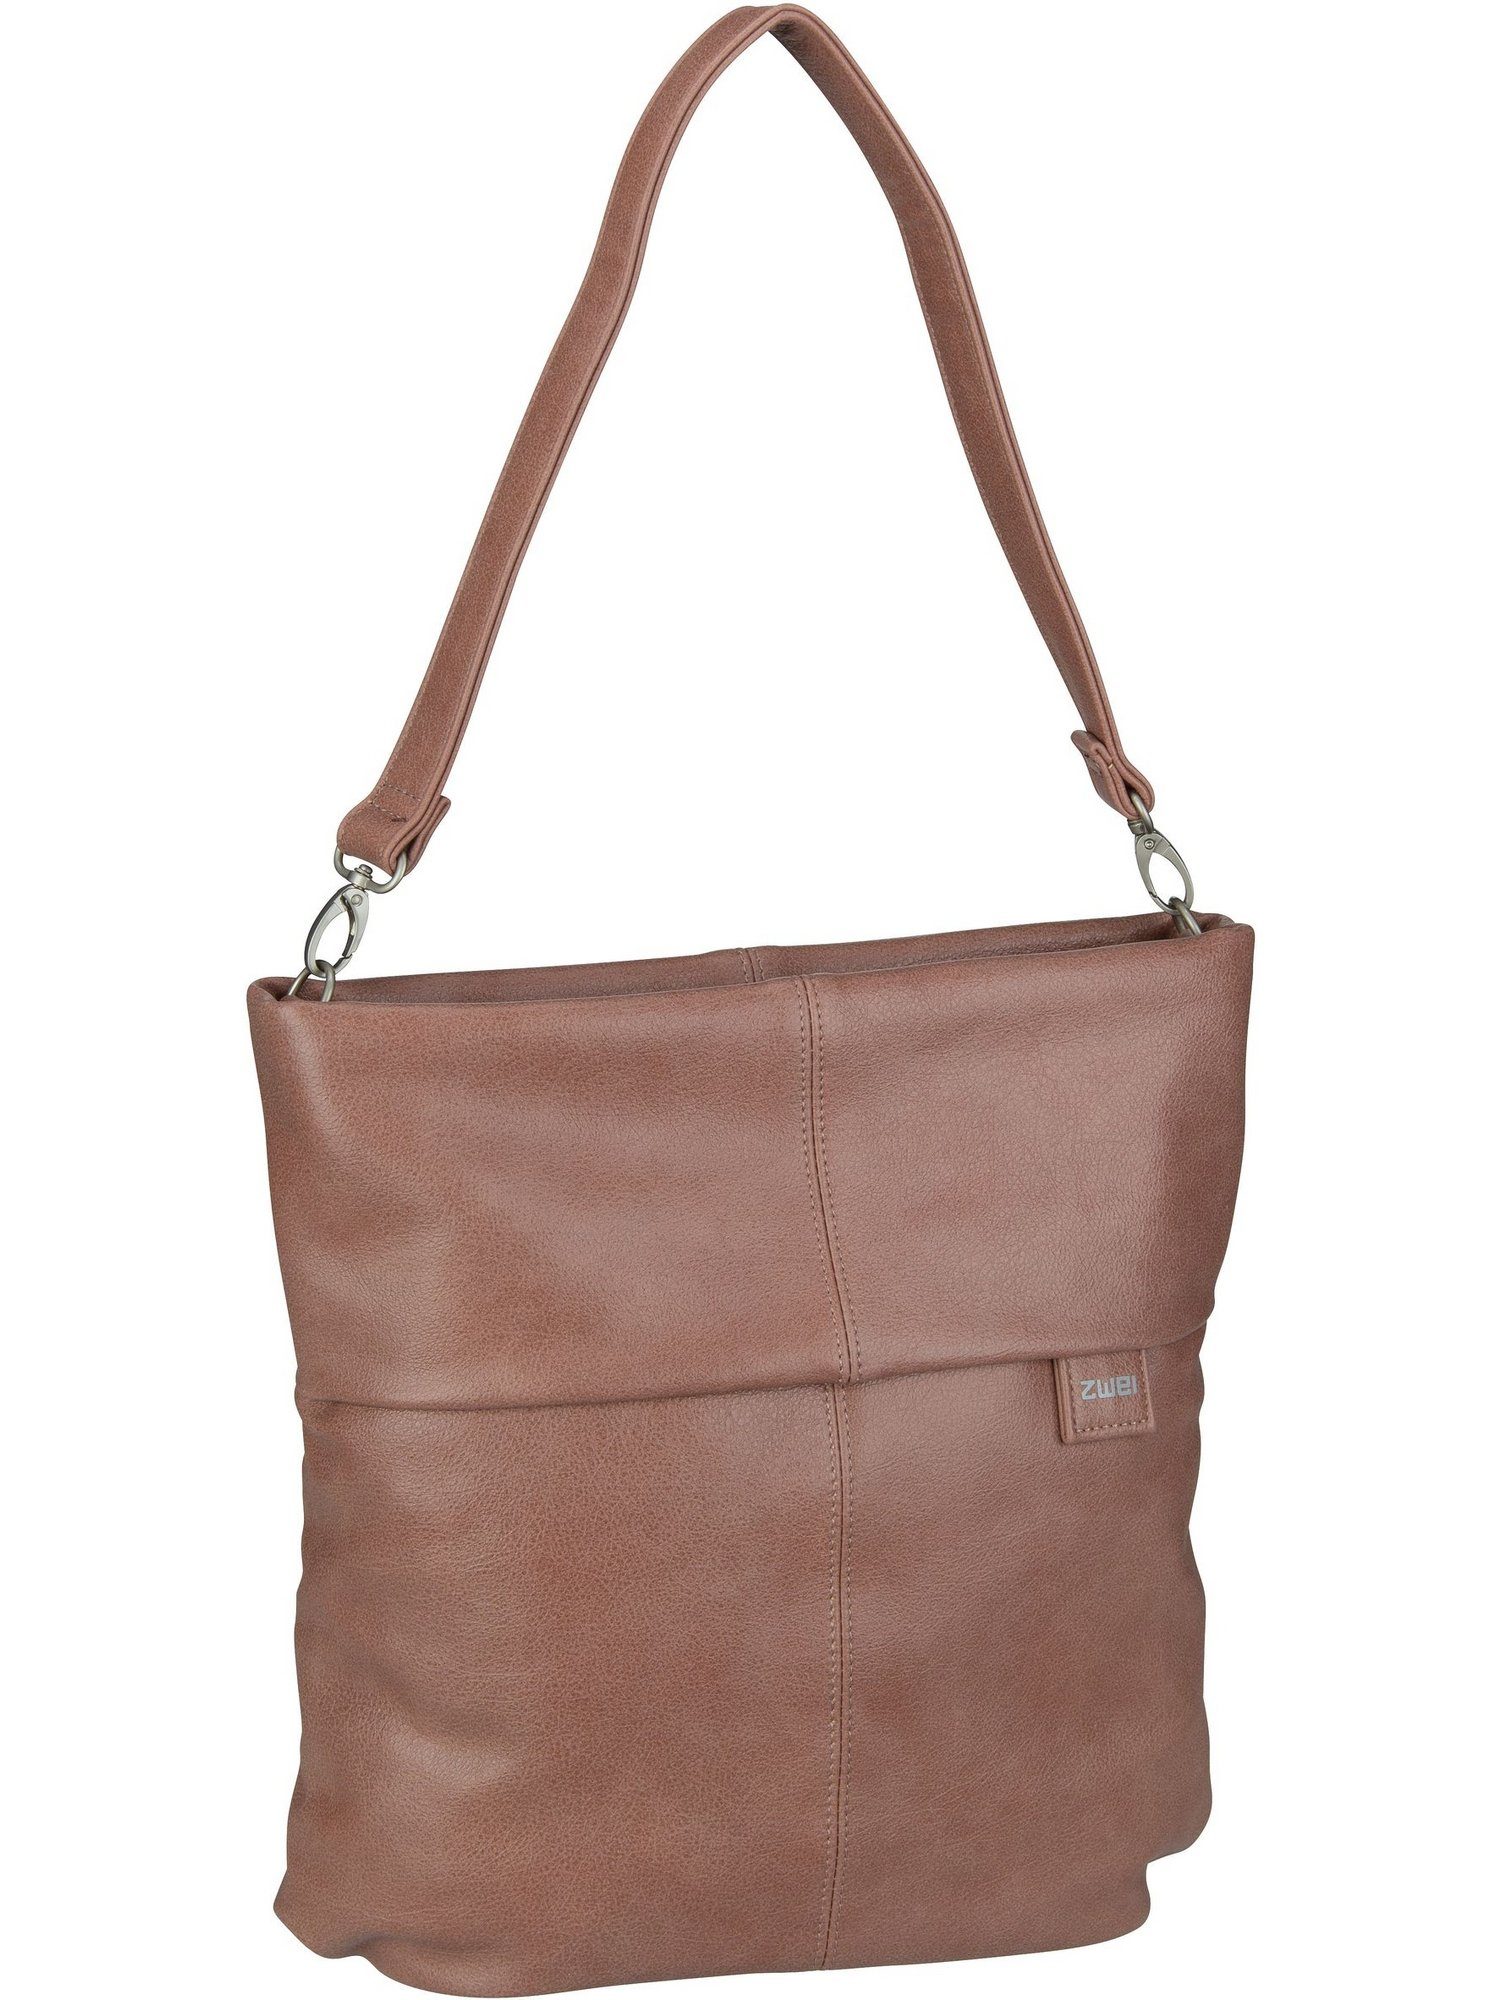 Zwei Handtasche Mademoiselle M12, Hobo Bag Blush